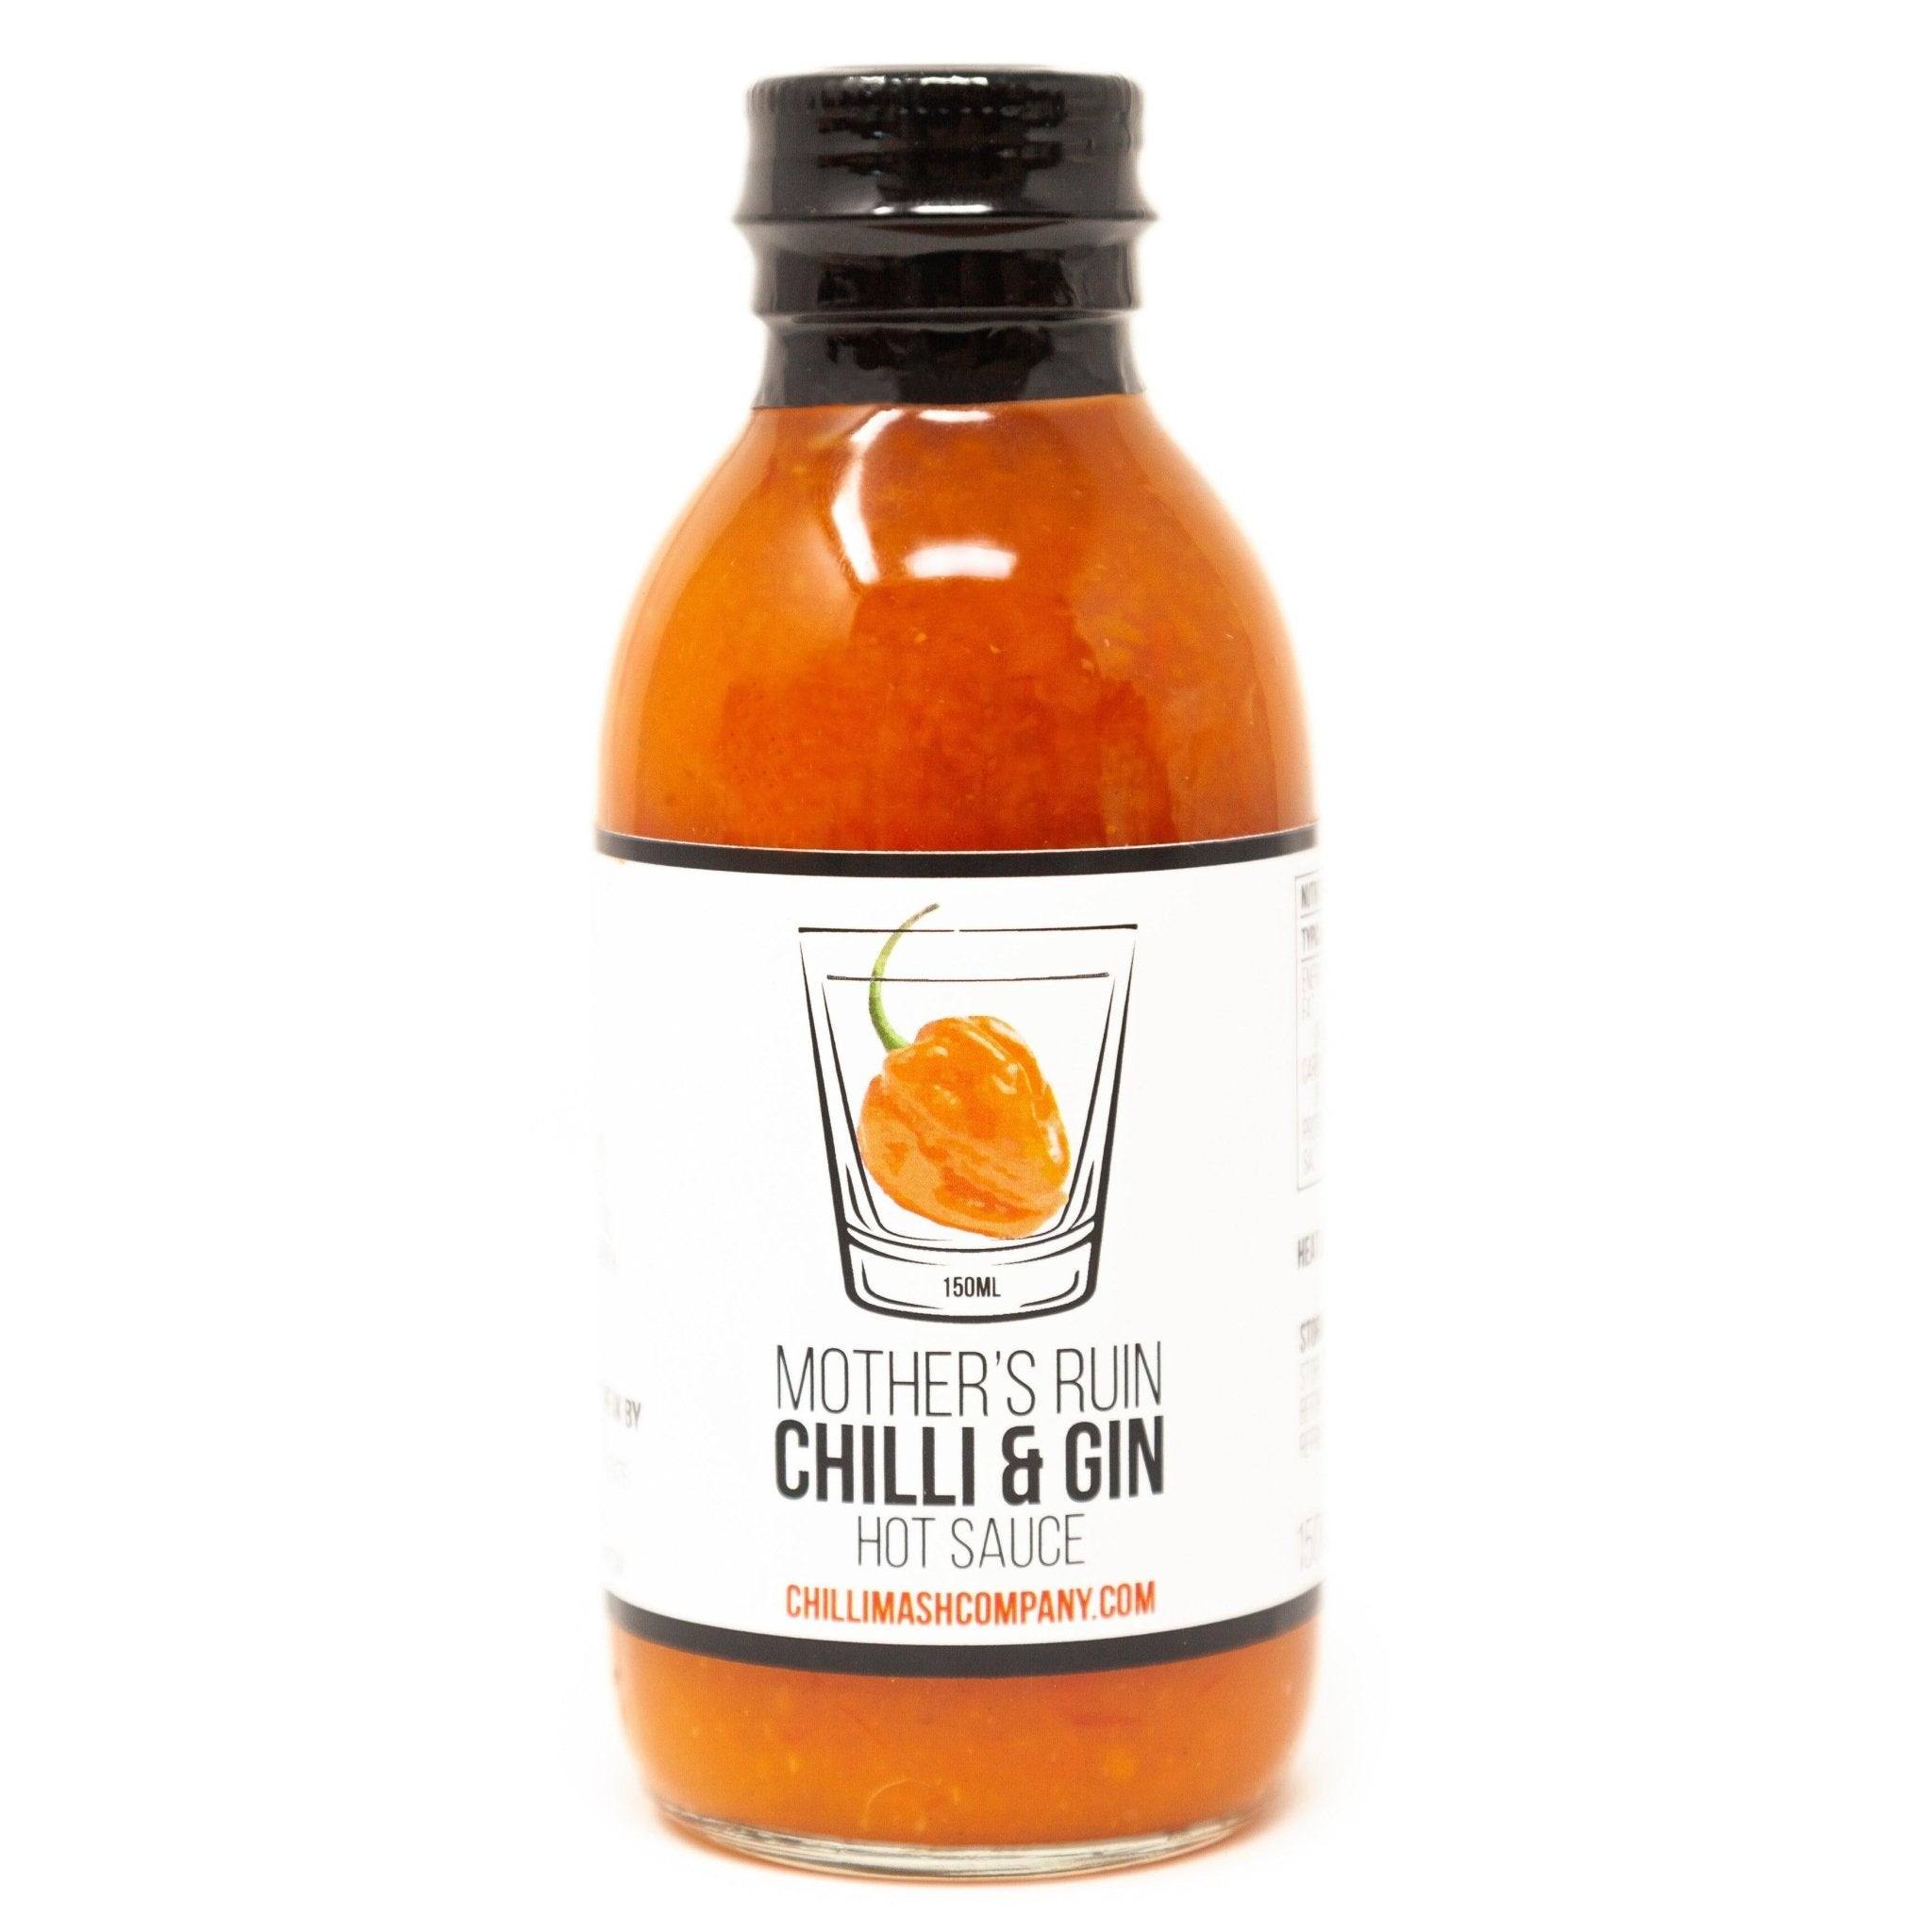 Mother's Ruin | 150ml | Chilli Mash Company | Gin & Chilli Hot Sauce - One Stop Chilli Shop